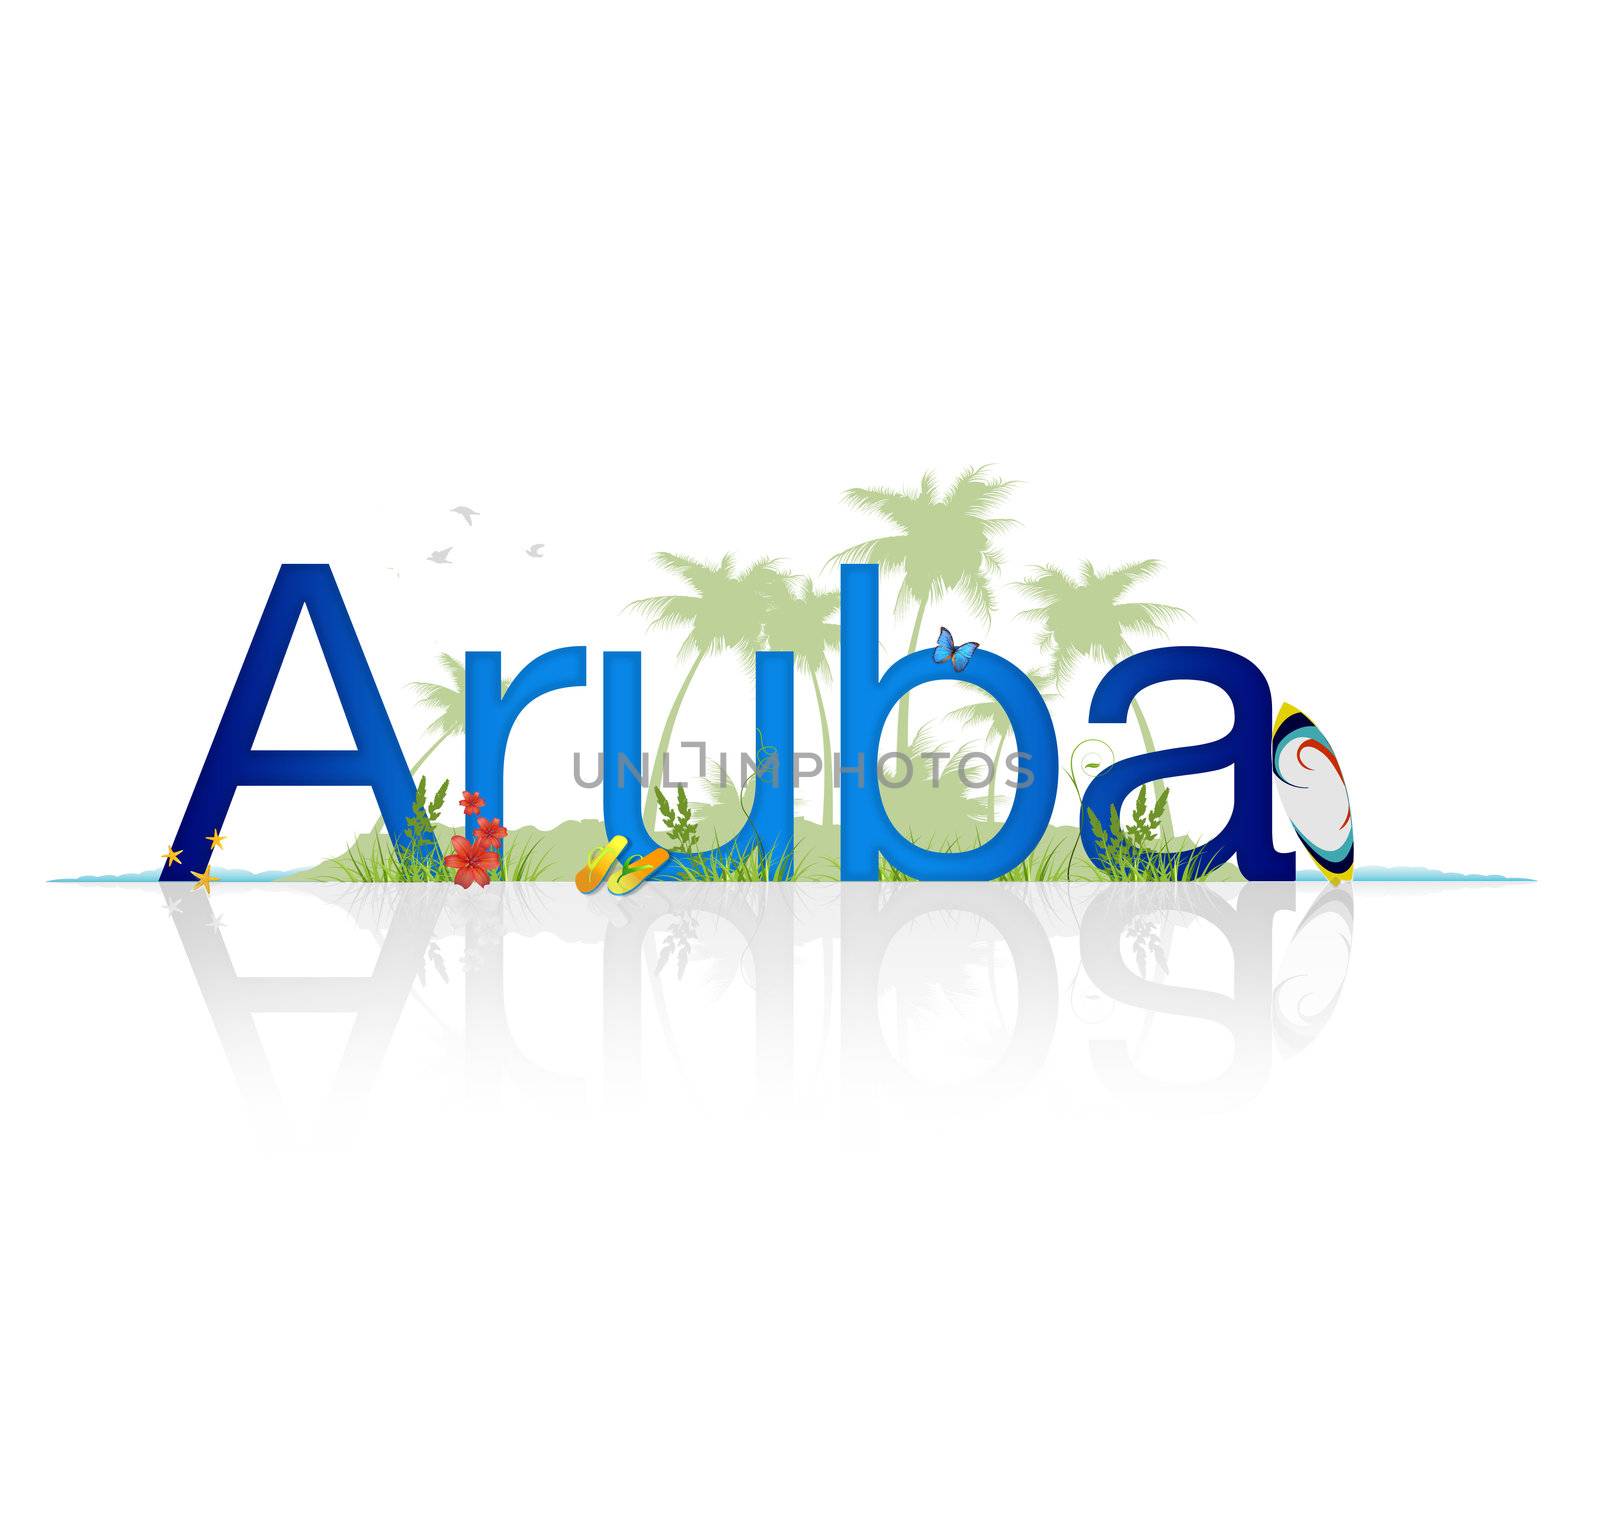 Travel Aruba by kbuntu